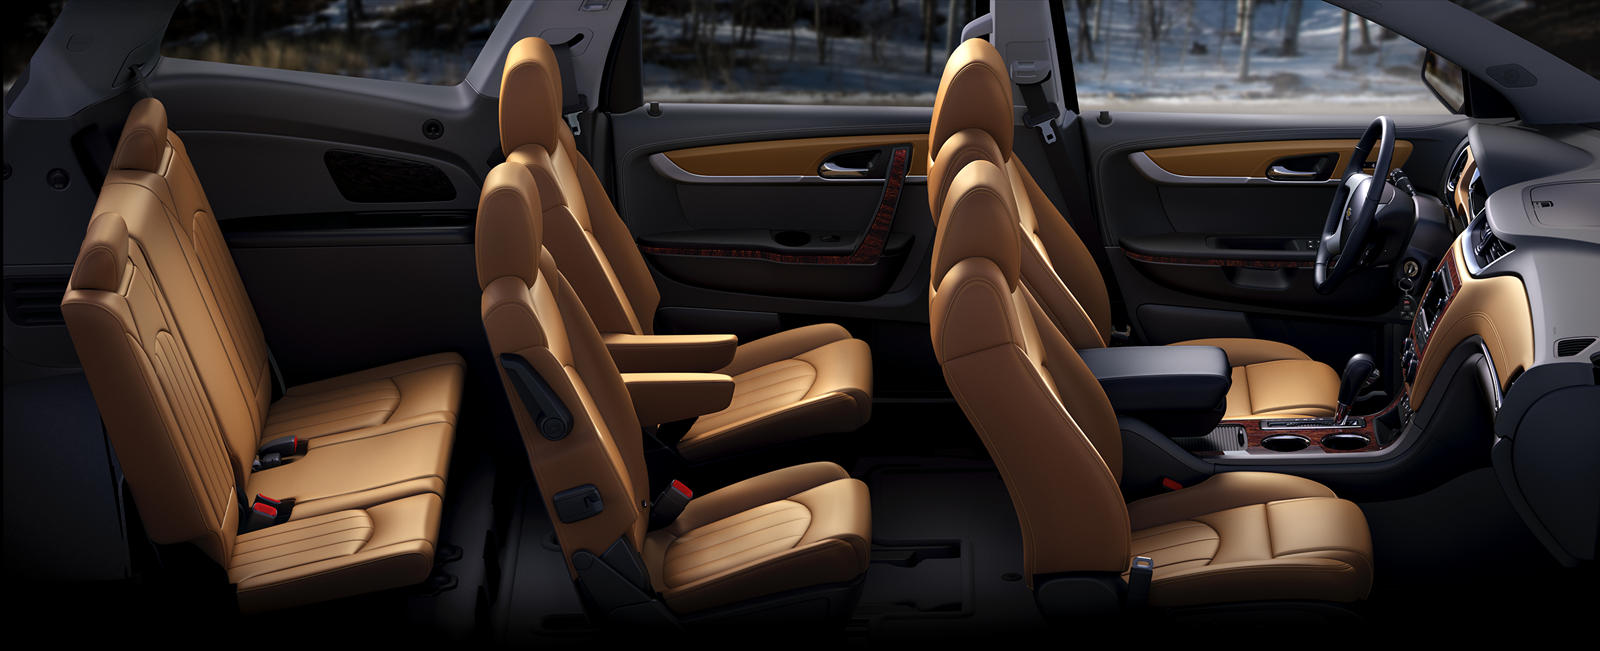 2015 Chevrolet Traverse Interior Photos | CarBuzz